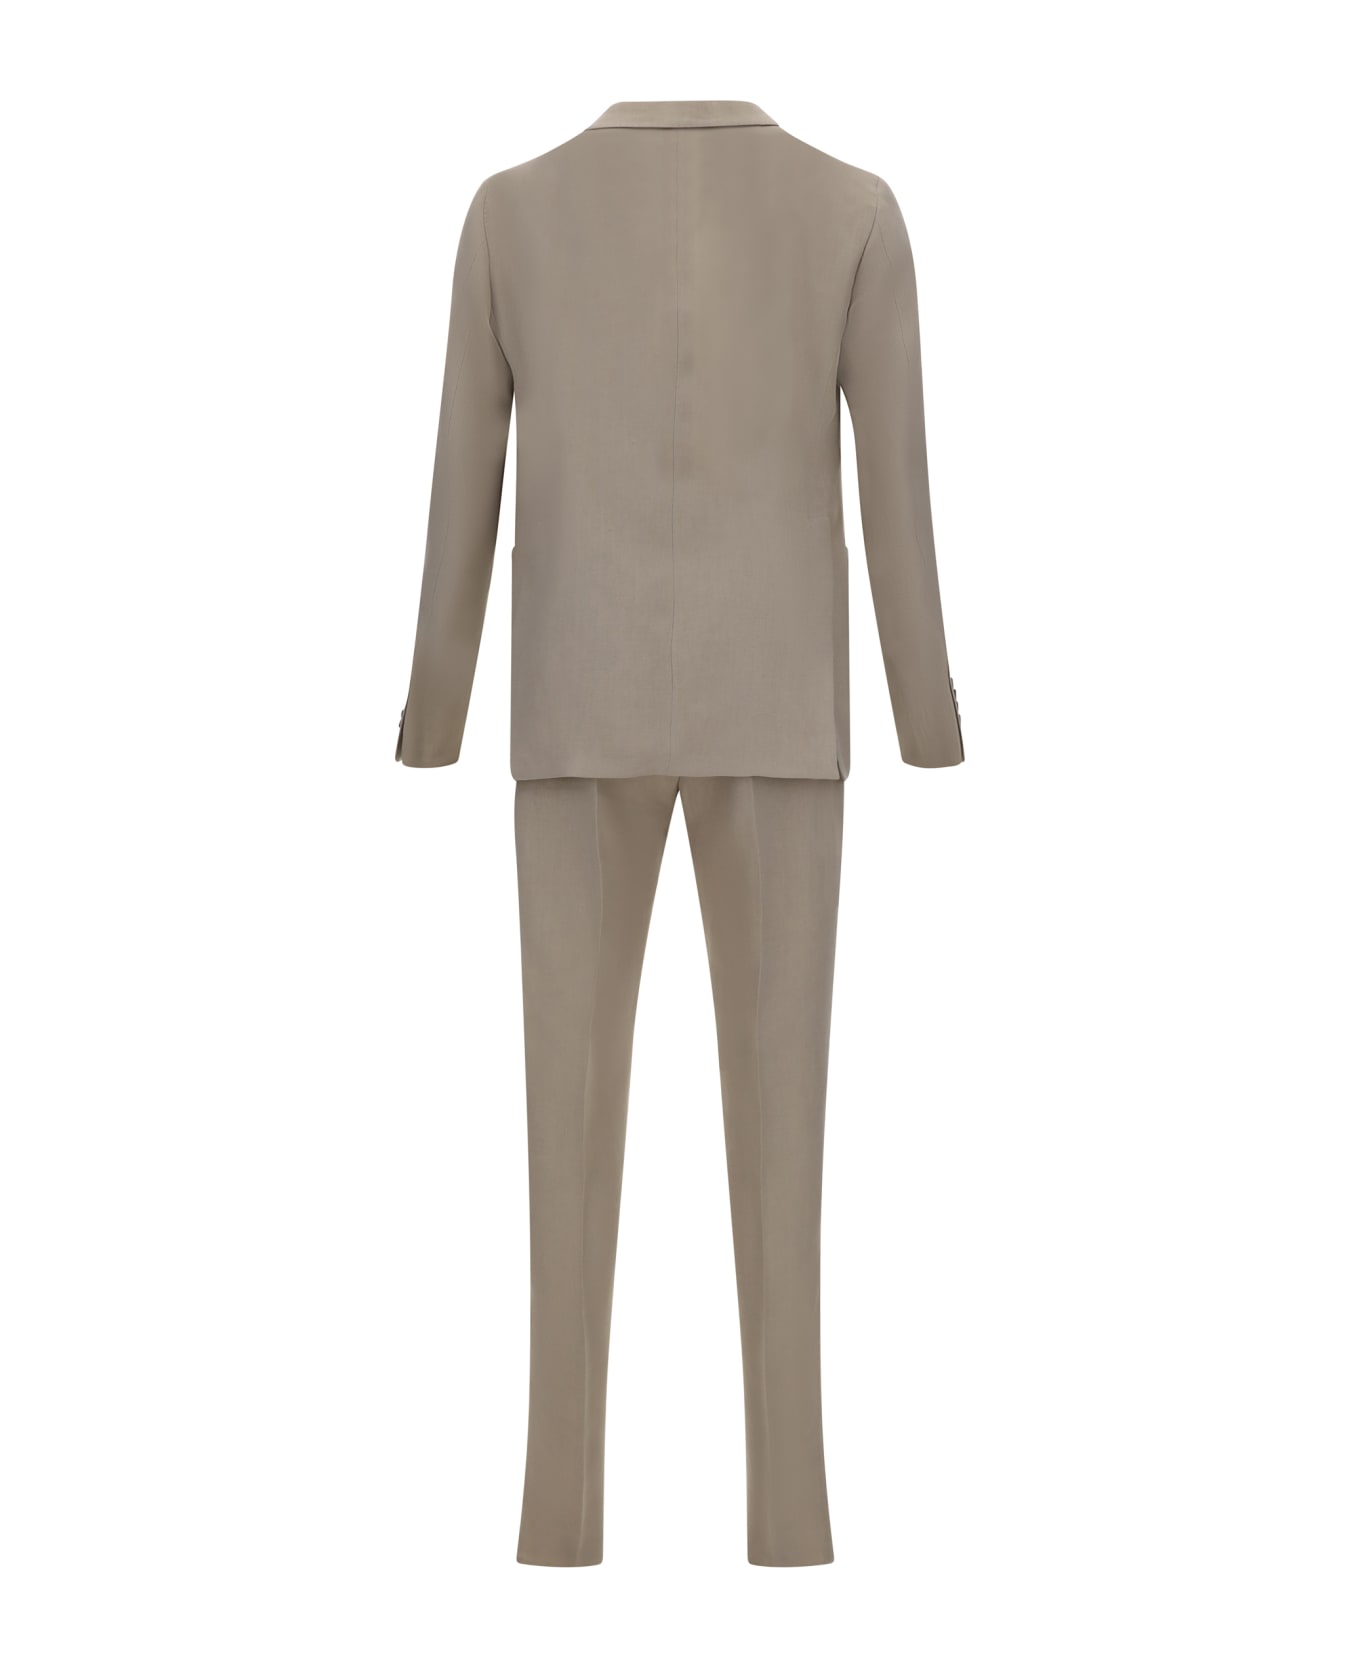 Tagliatore Suit - Et969 スーツ